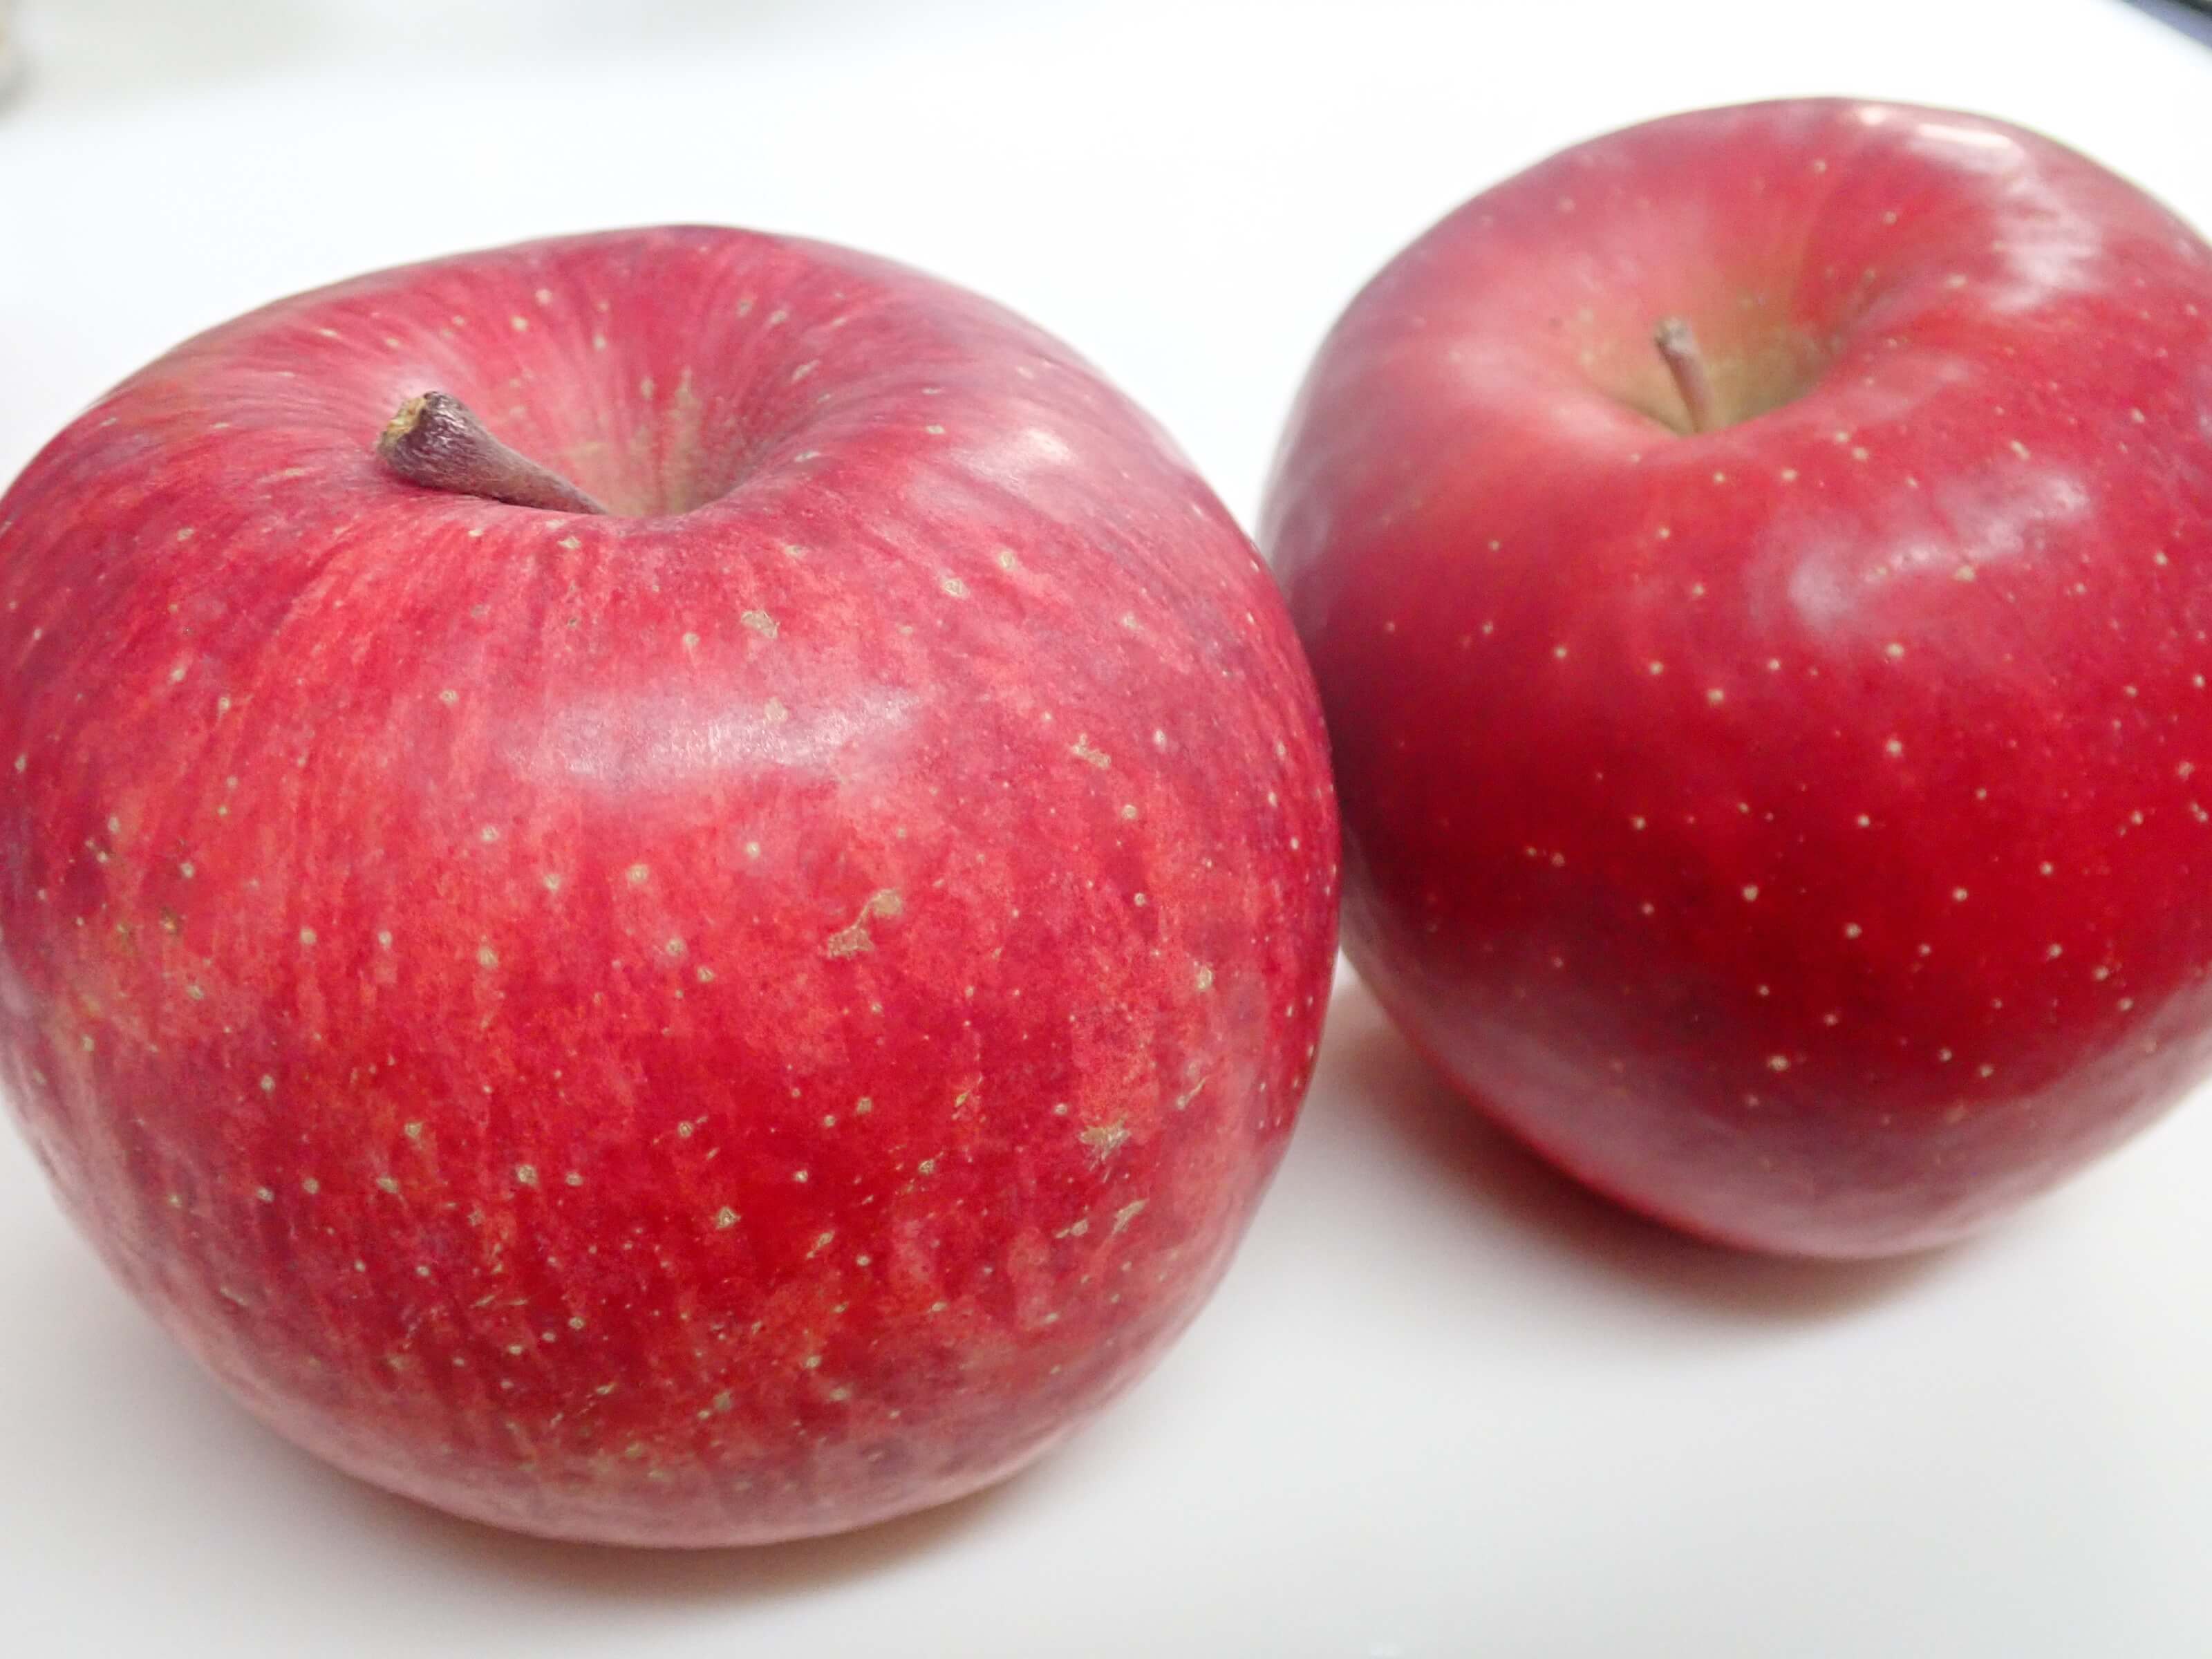 リンゴの 蜜 の入り方は 表面の柄 模様をみたら見分けられるのか カルチべブログ カルチベ 農耕と園藝online